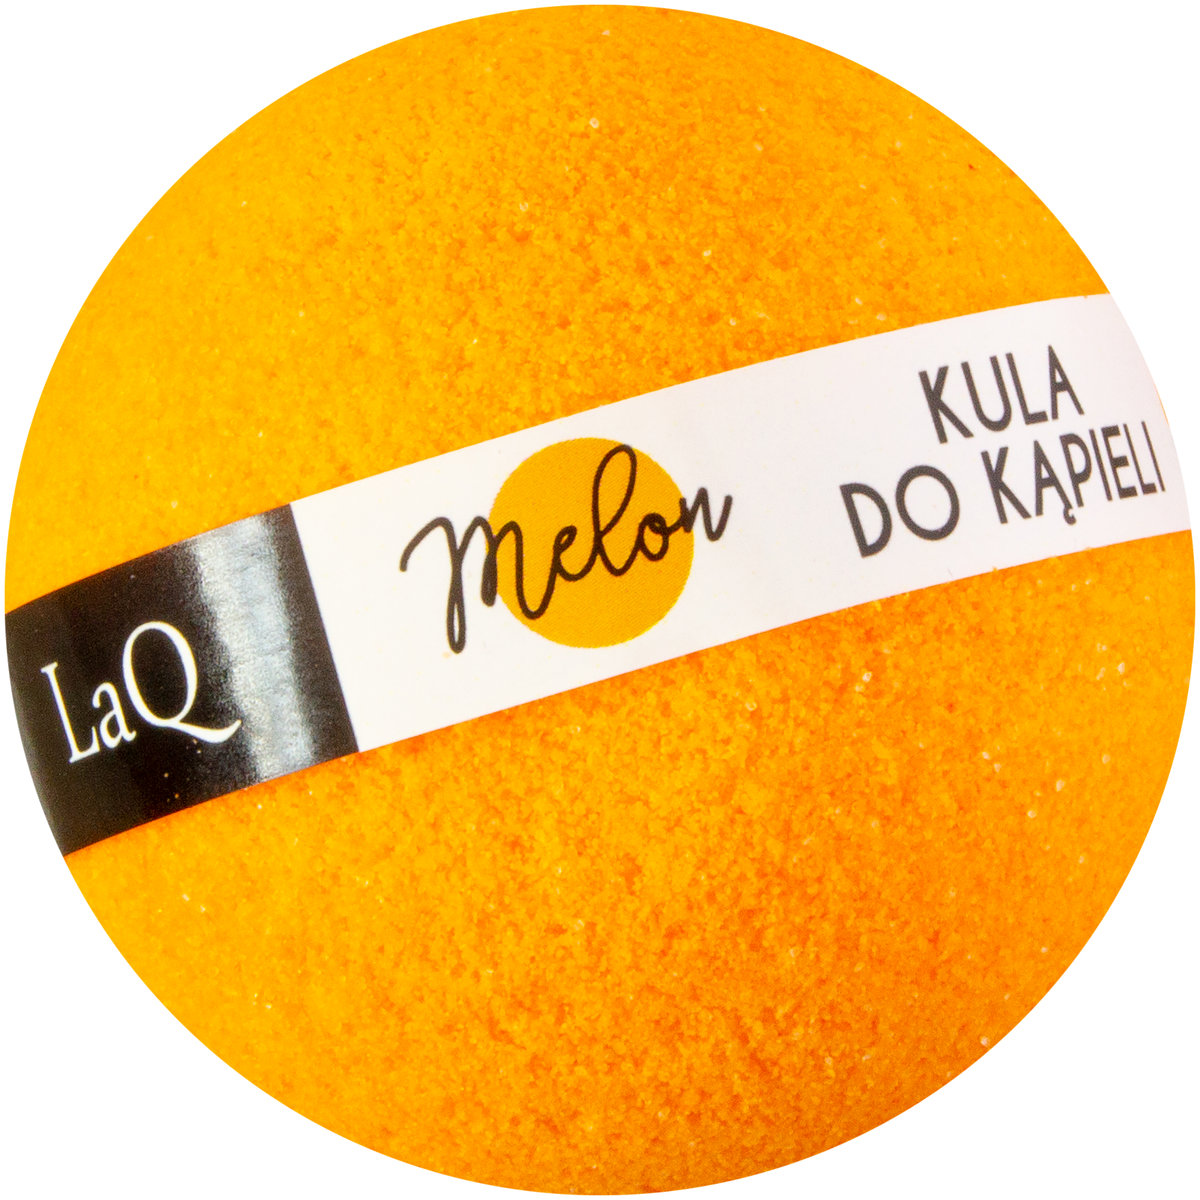 LAQ LaQ Kula musująca do kąpieli Melon - pomarańczowa 100g